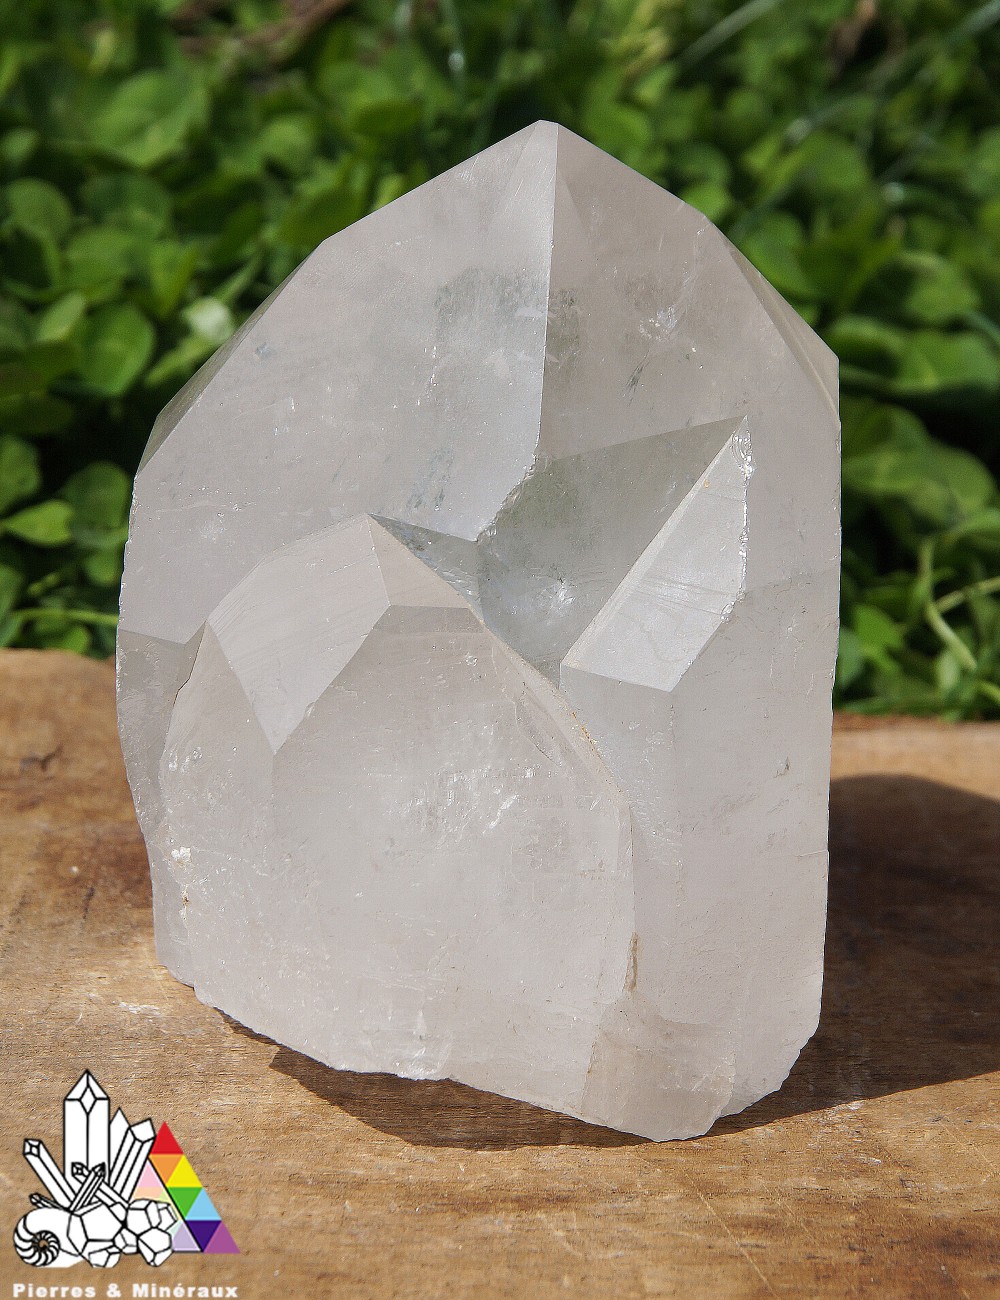 Petite pointe Cristal De Roche - Vertus des pierres - Pierres et Minéraux